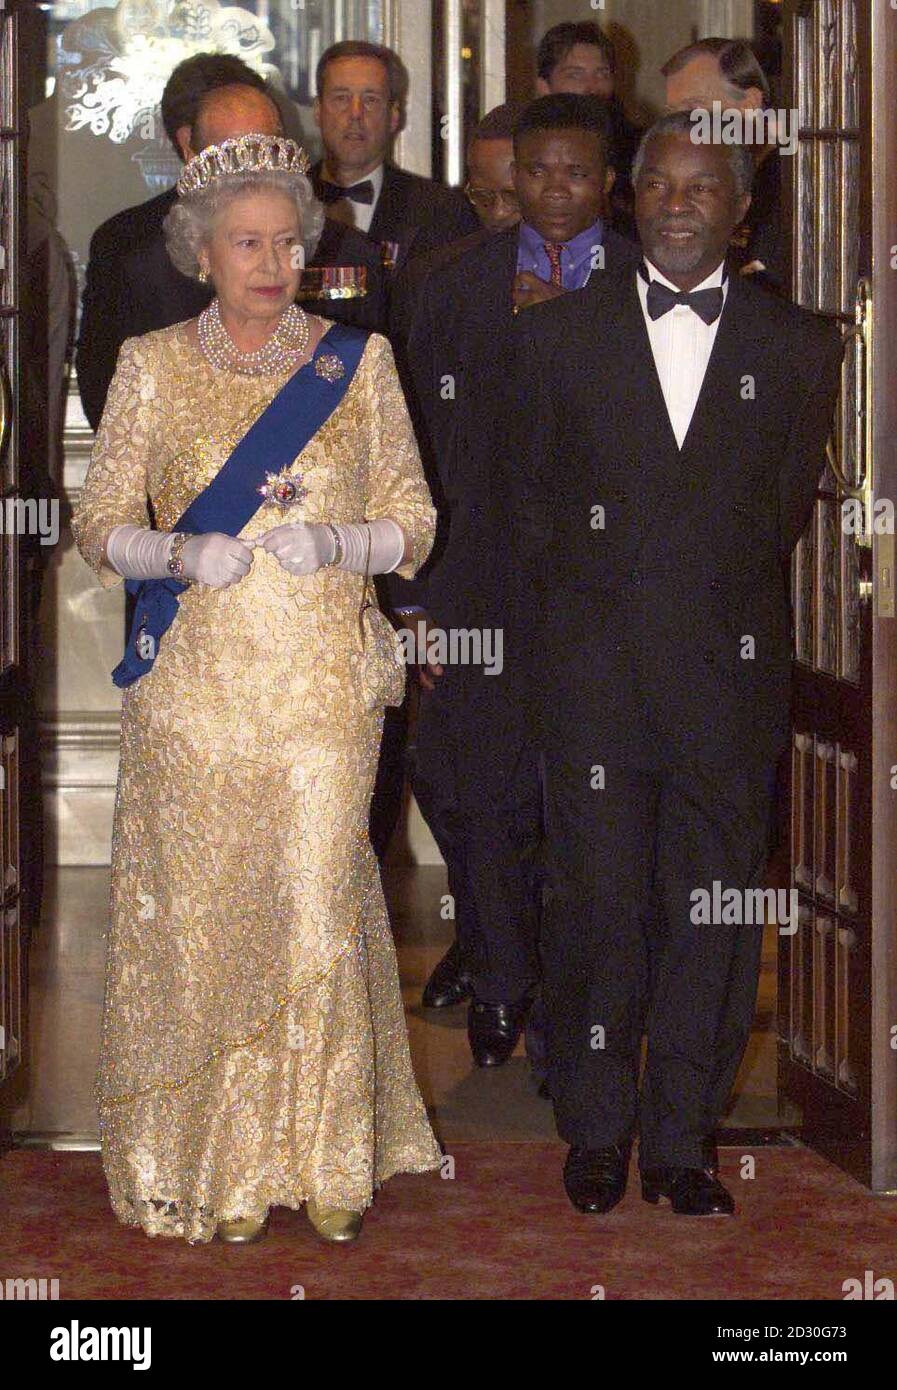 L'AFRIQUE DU SUD SORT: La Reine Elizabeth II arrive avec le Président Mbeki, pour un banquet d'État tenu à l'intention des chefs de gouvernement du Commonwealth, à Durban, en Afrique du Sud. Banque D'Images